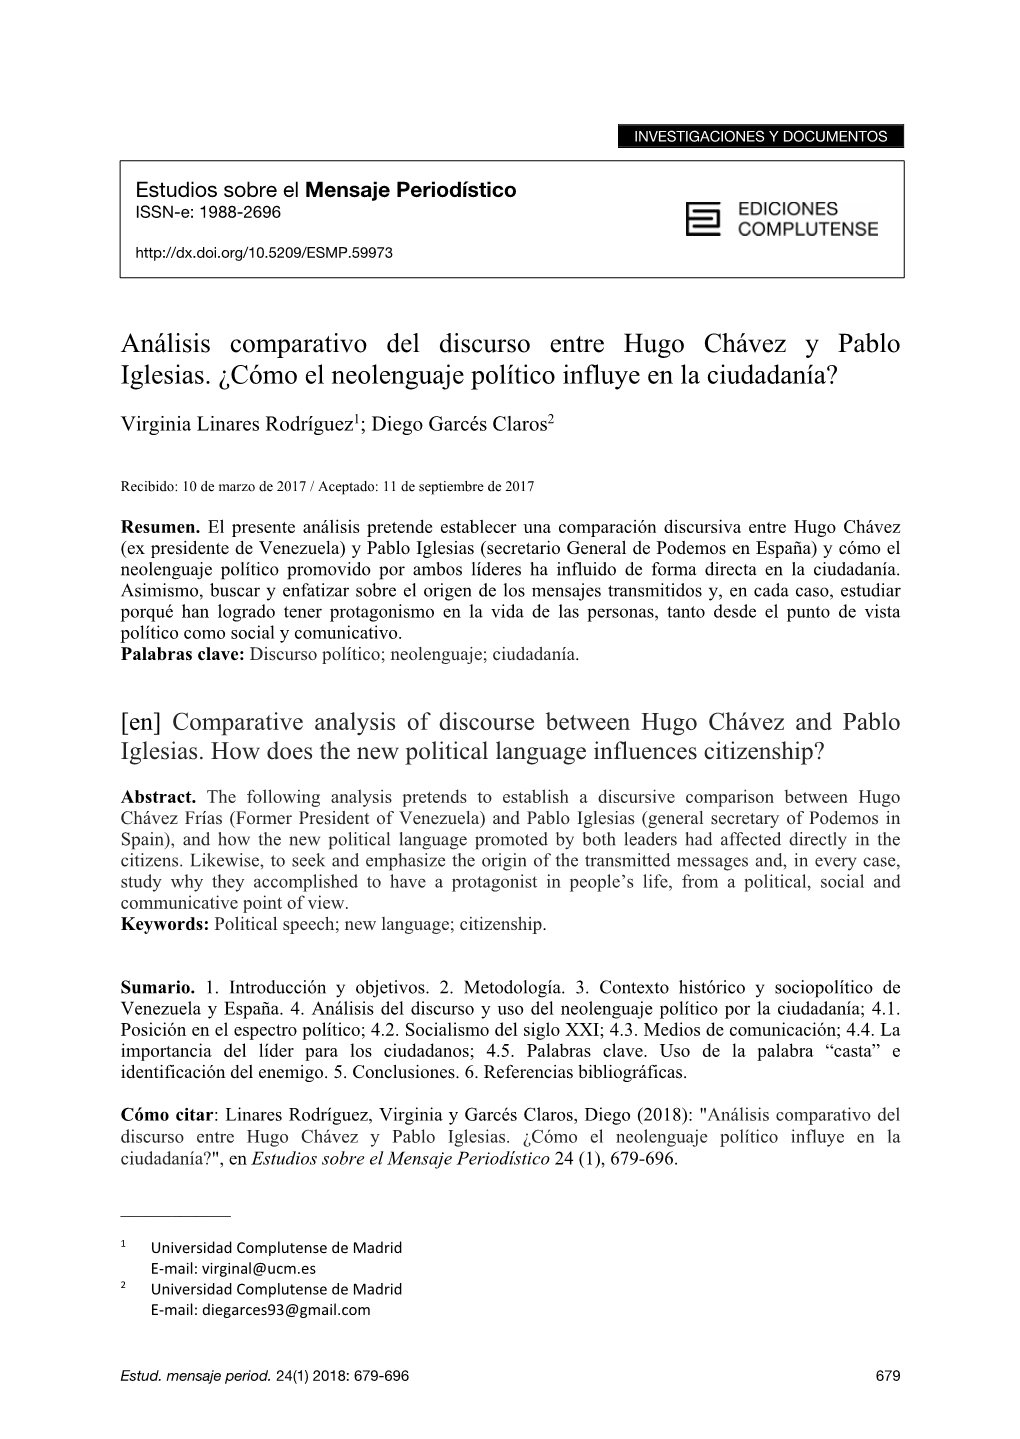 Análisis Comparativo Del Discurso Entre Hugo Chávez Y Pablo Iglesias